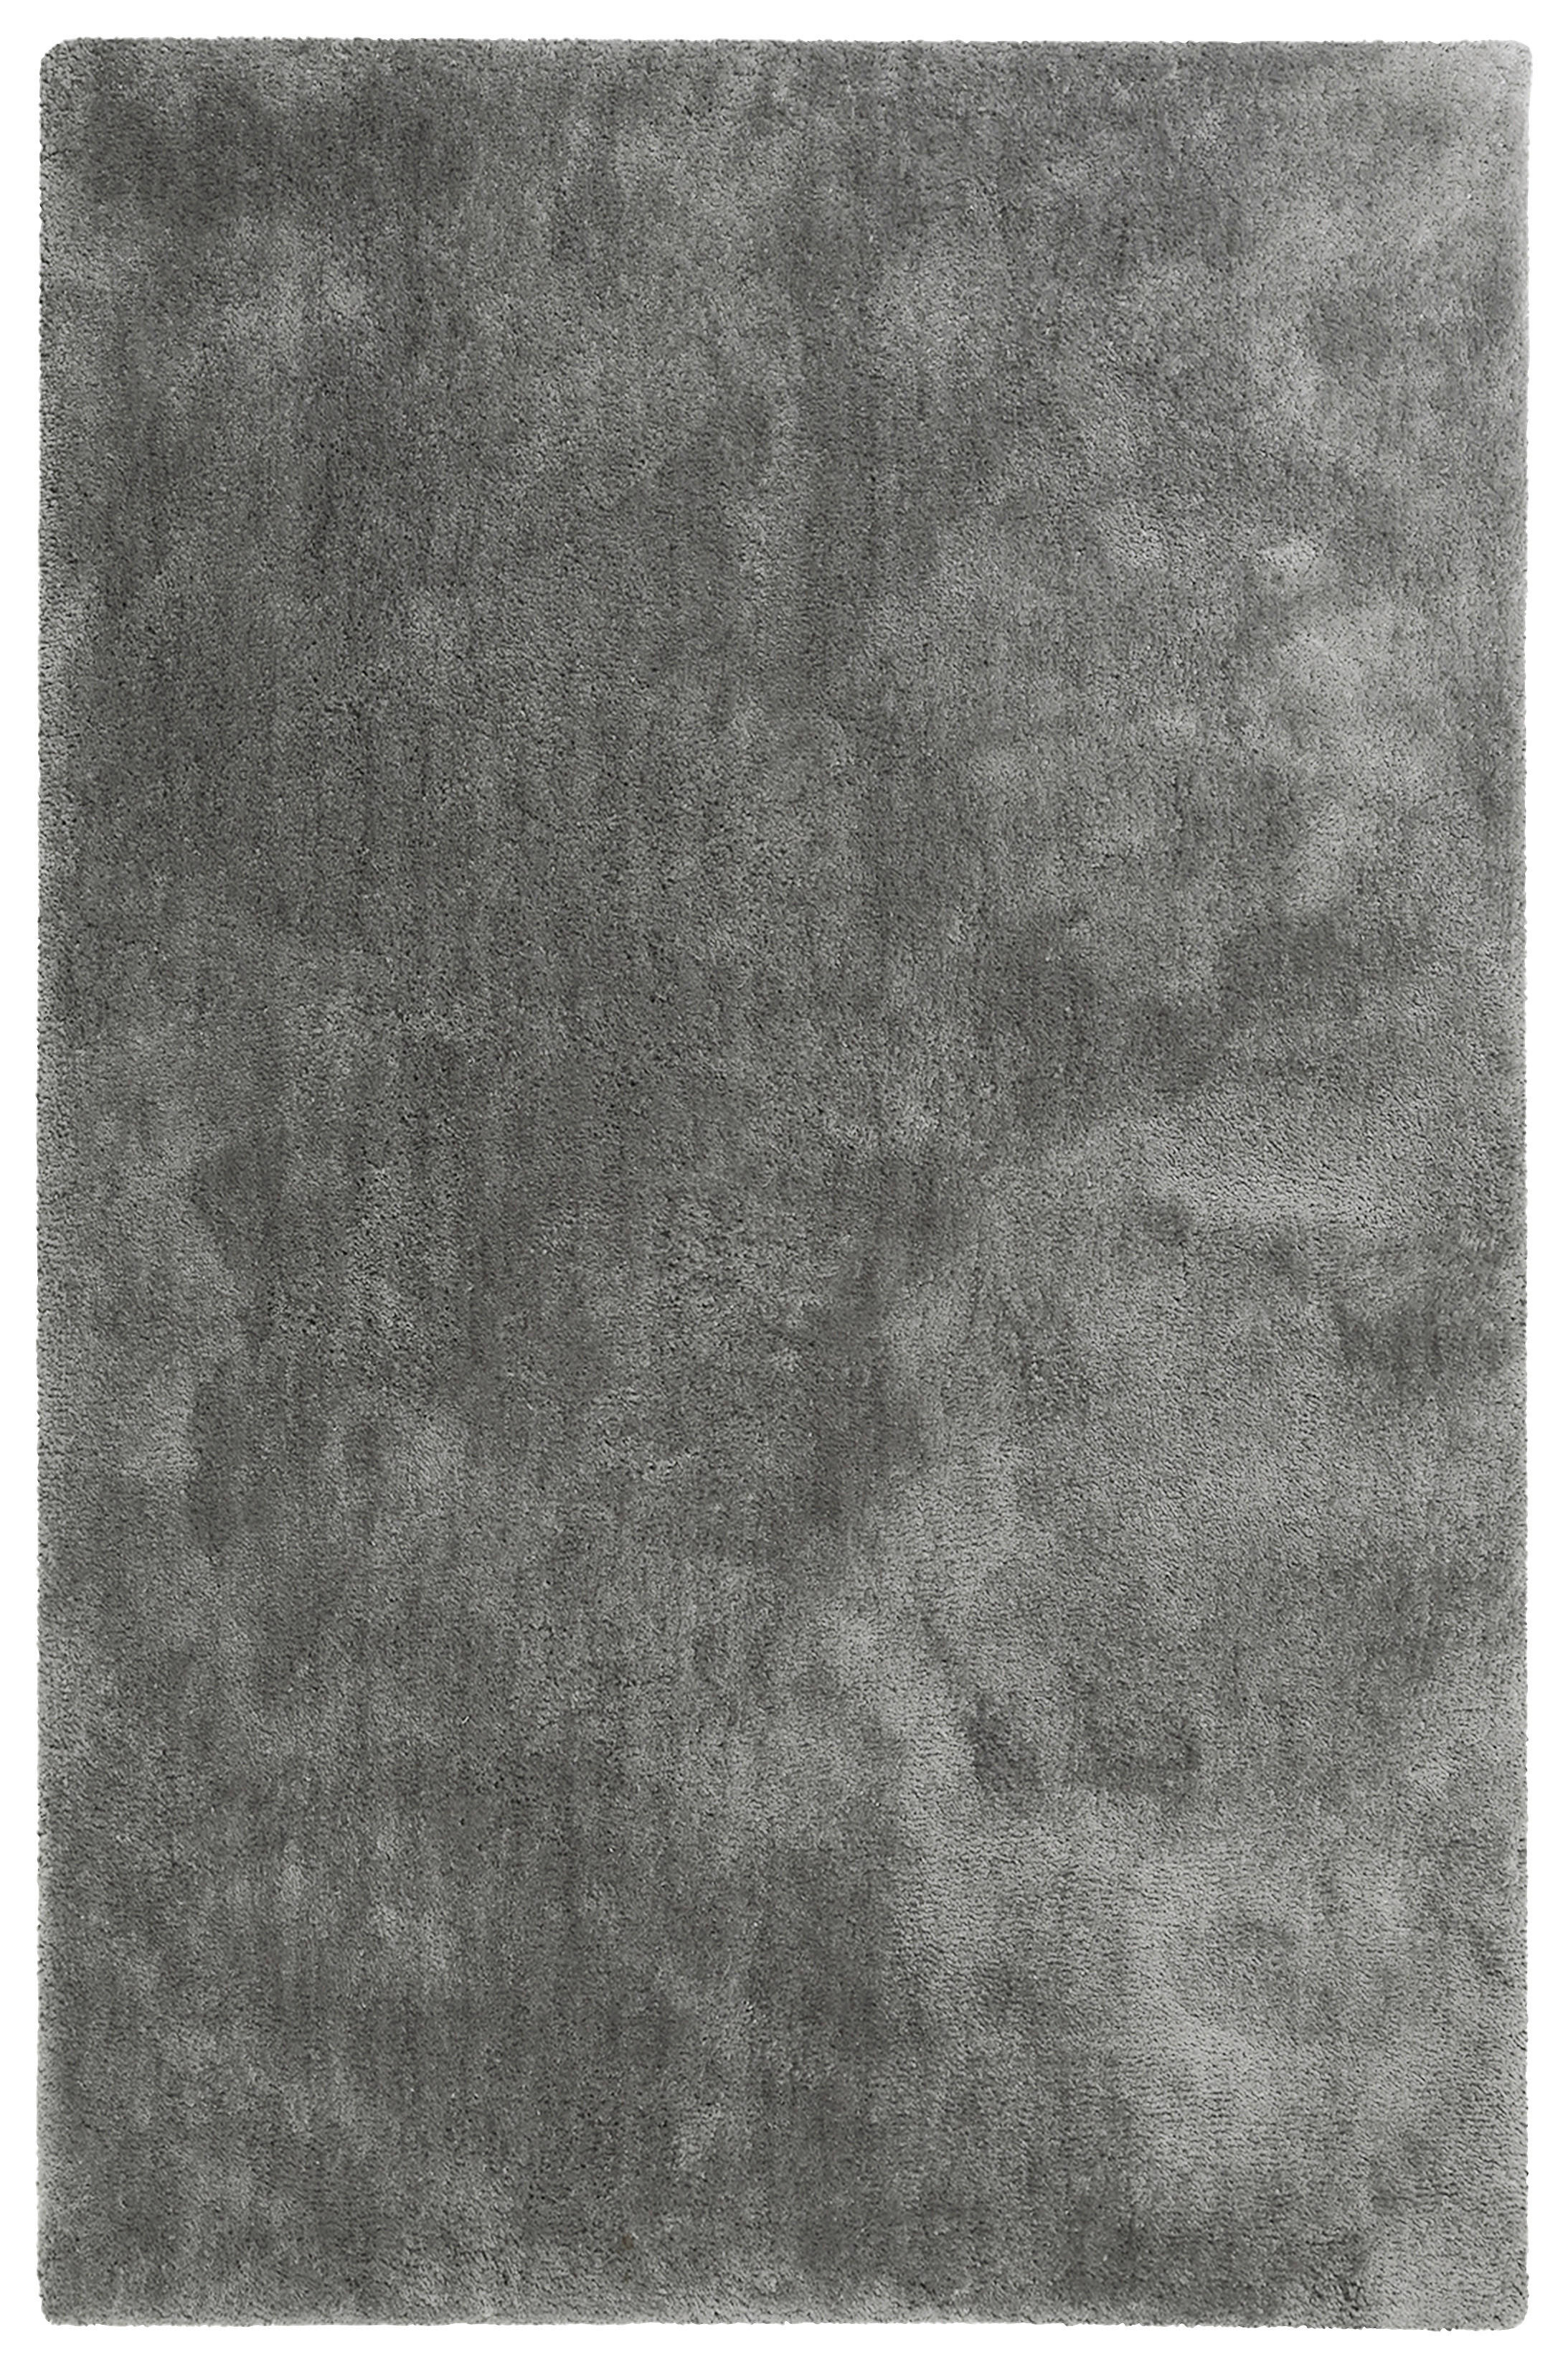 Greige 200x200 cm gewebt ESPRIT Hochflorteppich